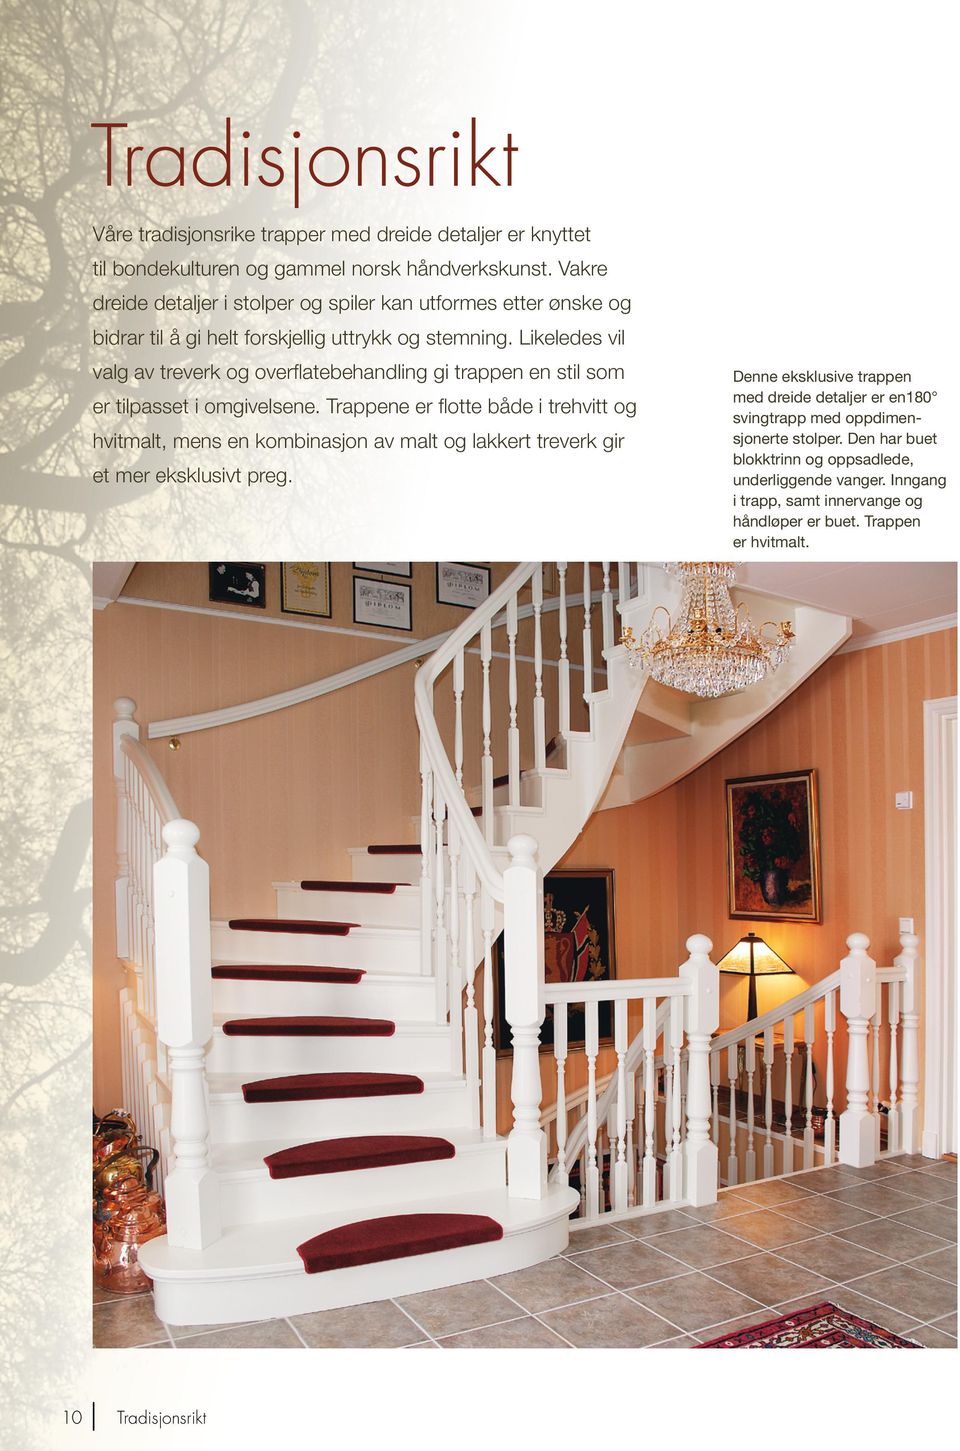 Likeledes vil valg av treverk og overflatebehandling gi trappen en stil som er tilpasset i omgivelsene.